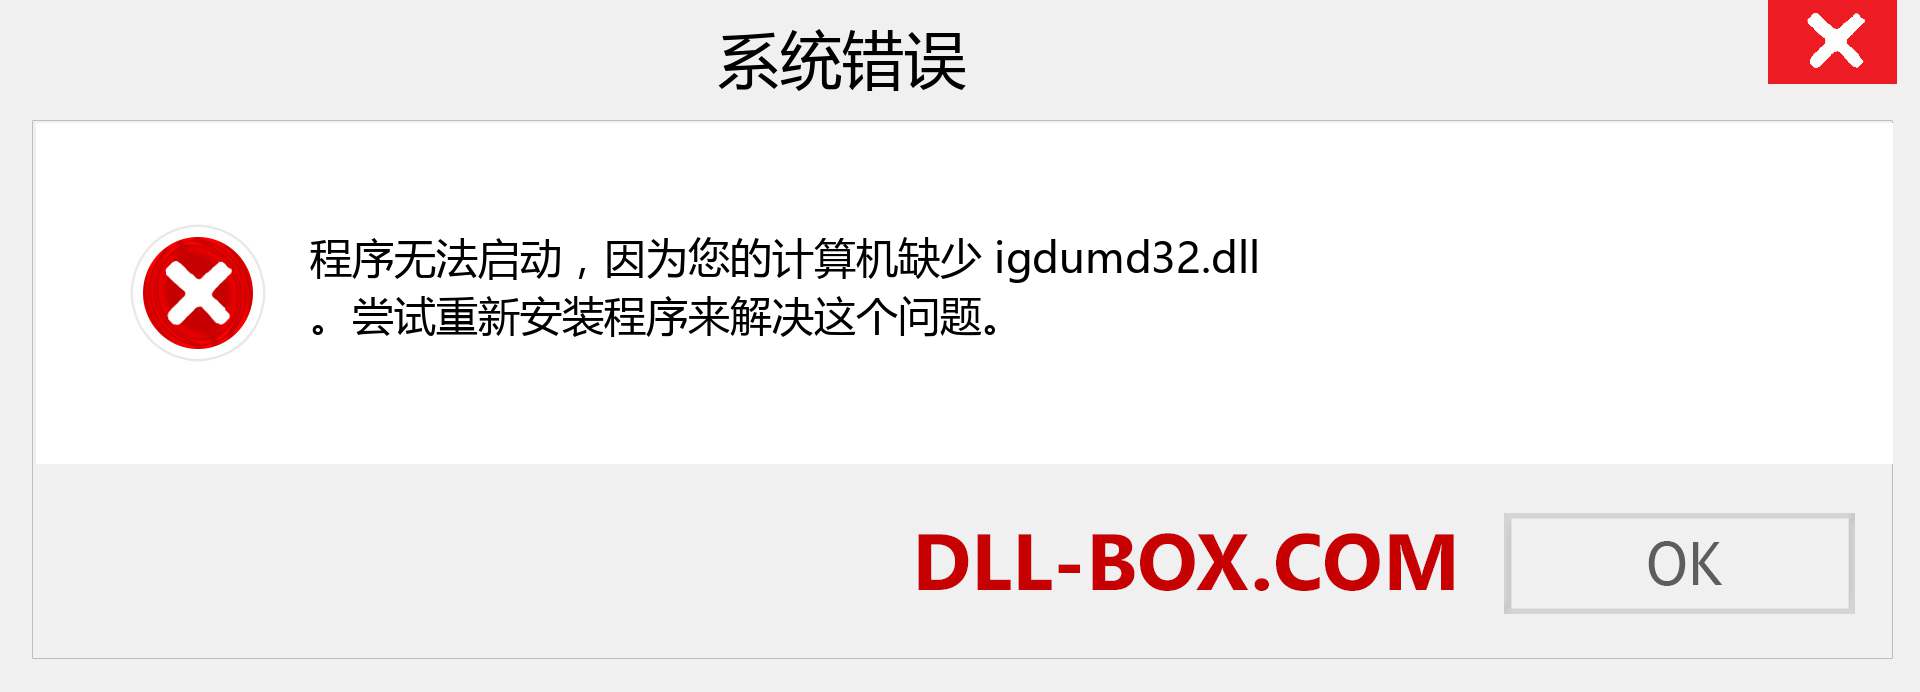 igdumd32.dll 文件丢失？。 适用于 Windows 7、8、10 的下载 - 修复 Windows、照片、图像上的 igdumd32 dll 丢失错误